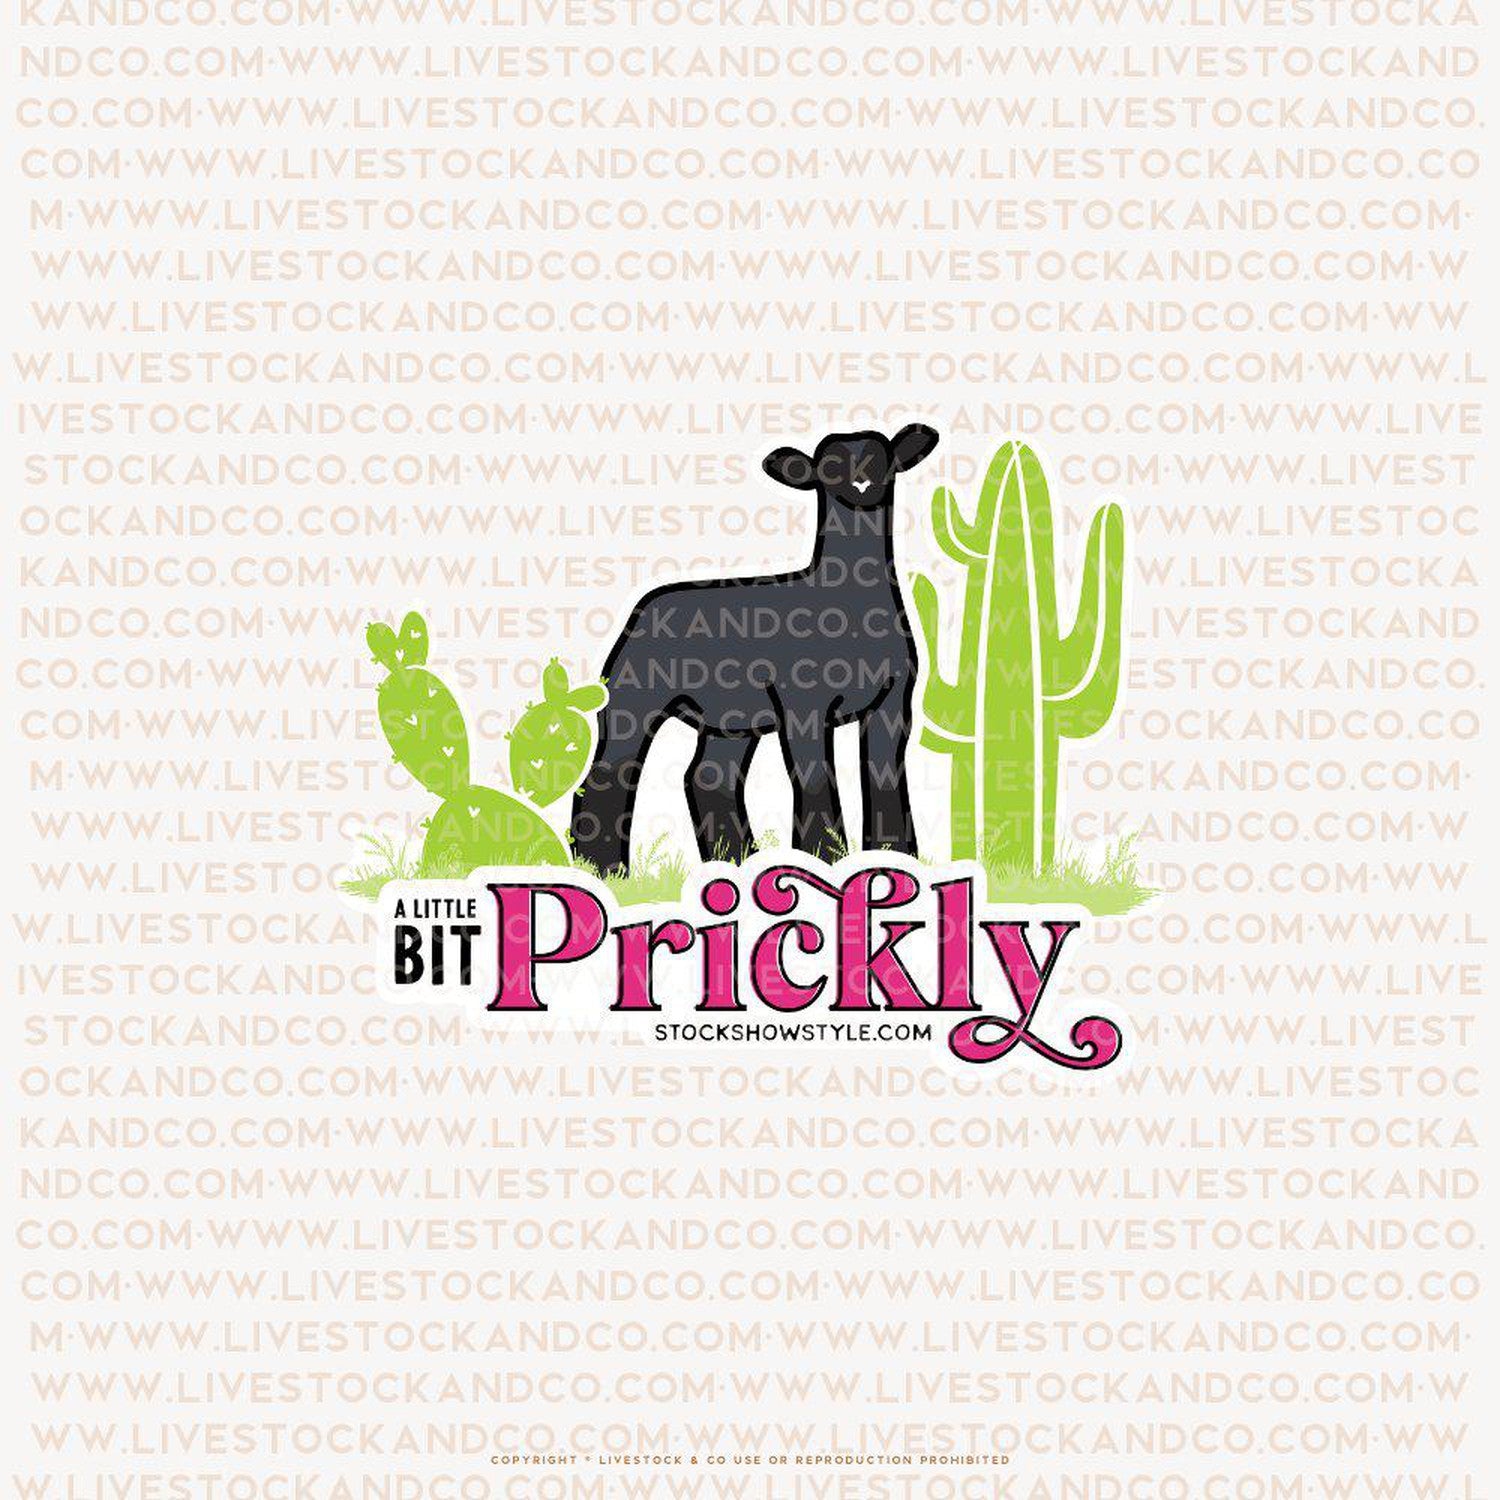 Custom Made Prickly Livestock Stickers Stock Show Livestock - Livestock &amp; Co. Boutique